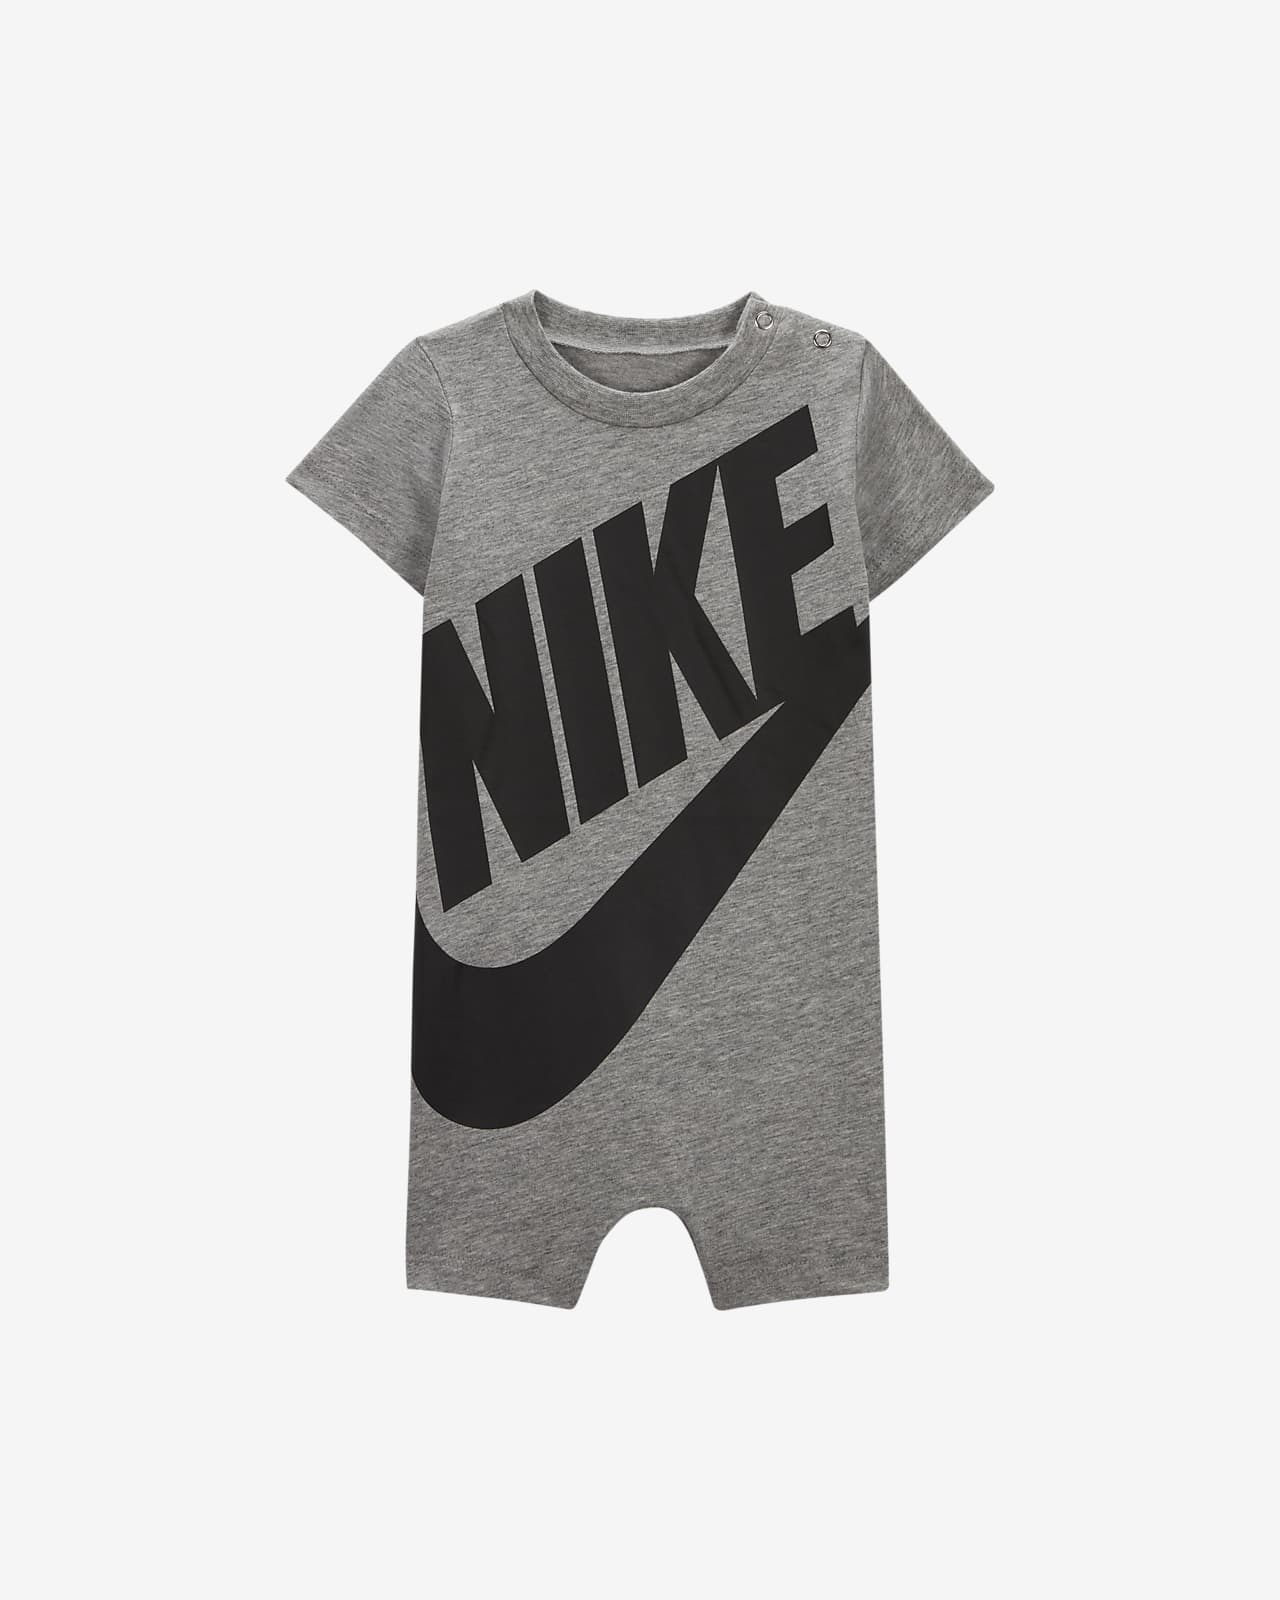 Nike-buksedragt til babyer (0-12 mdr.)